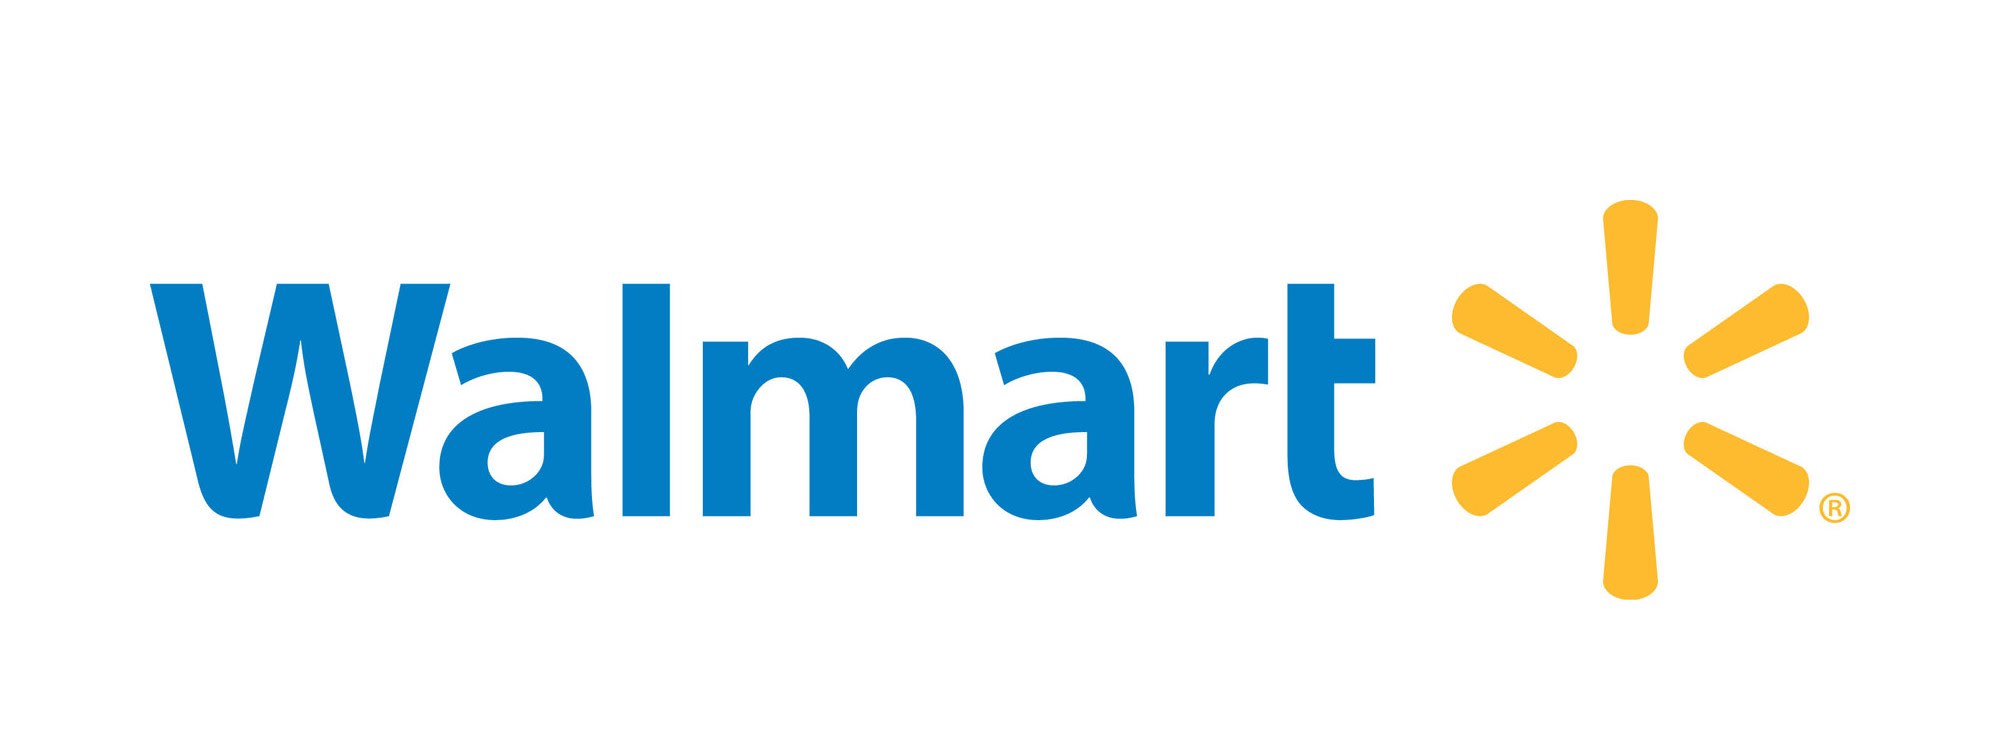 https://www.domino.com/uploads/brands/walmart-logo-wordmark.jpg?auto=webp